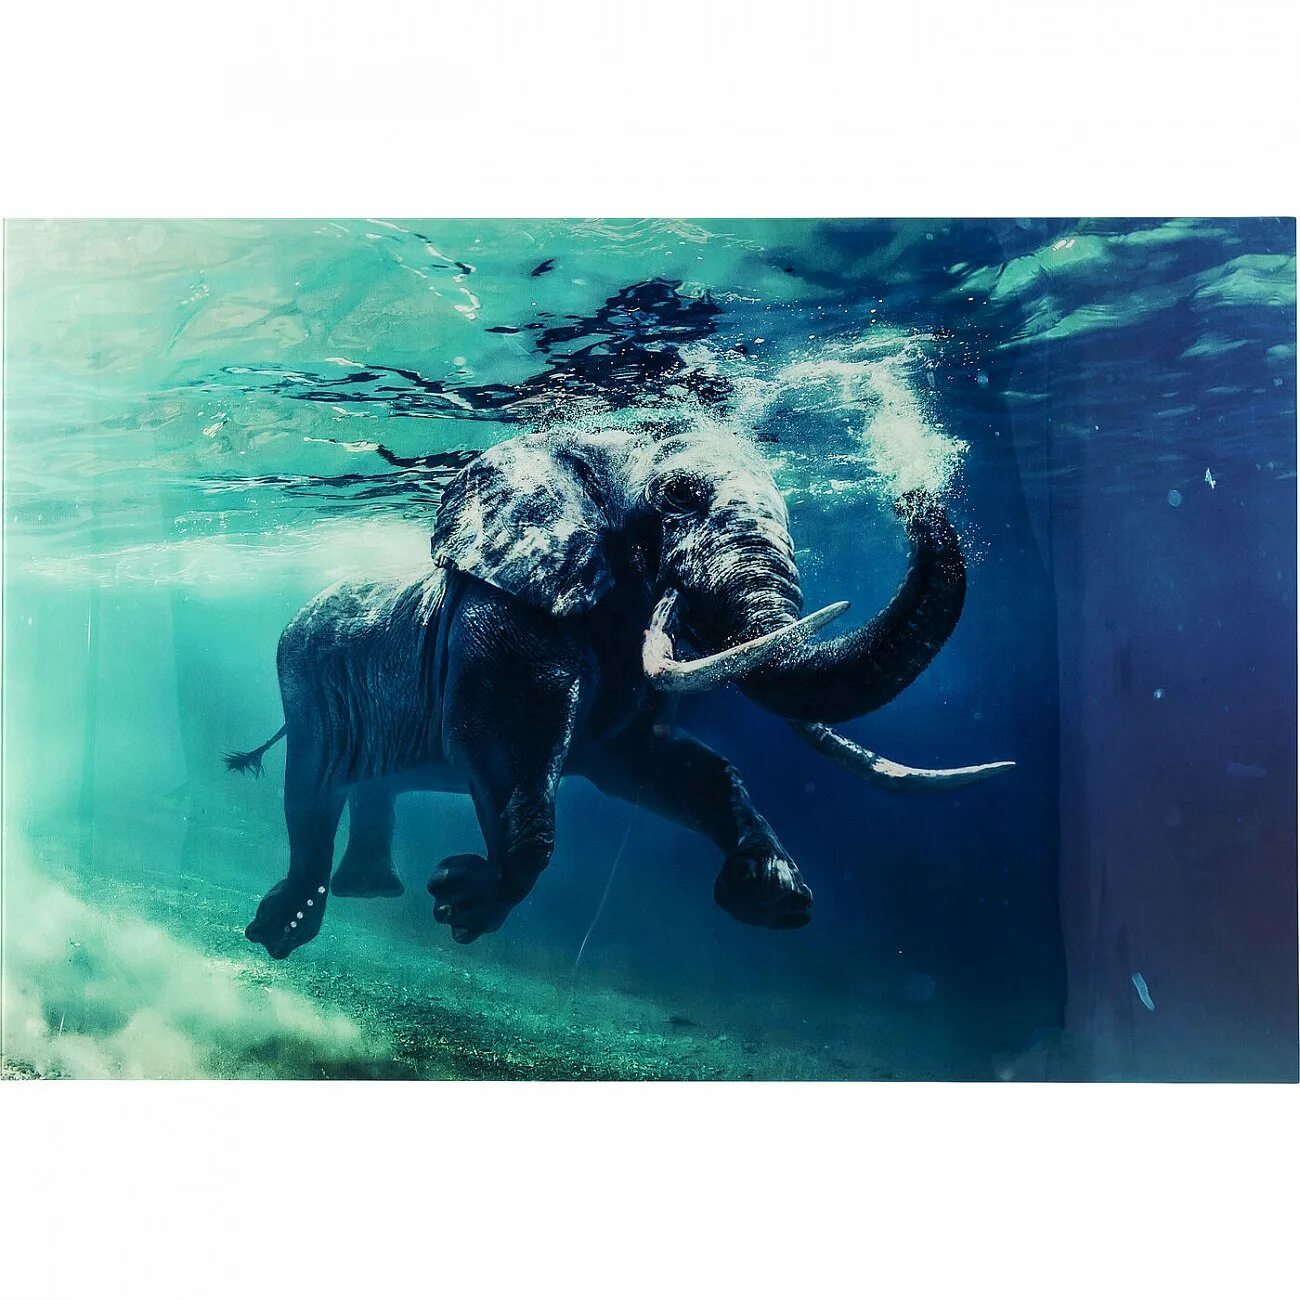 Elephant swim. Слон под водой. Слоны плавают. Слон плывет. Слоны в воде.